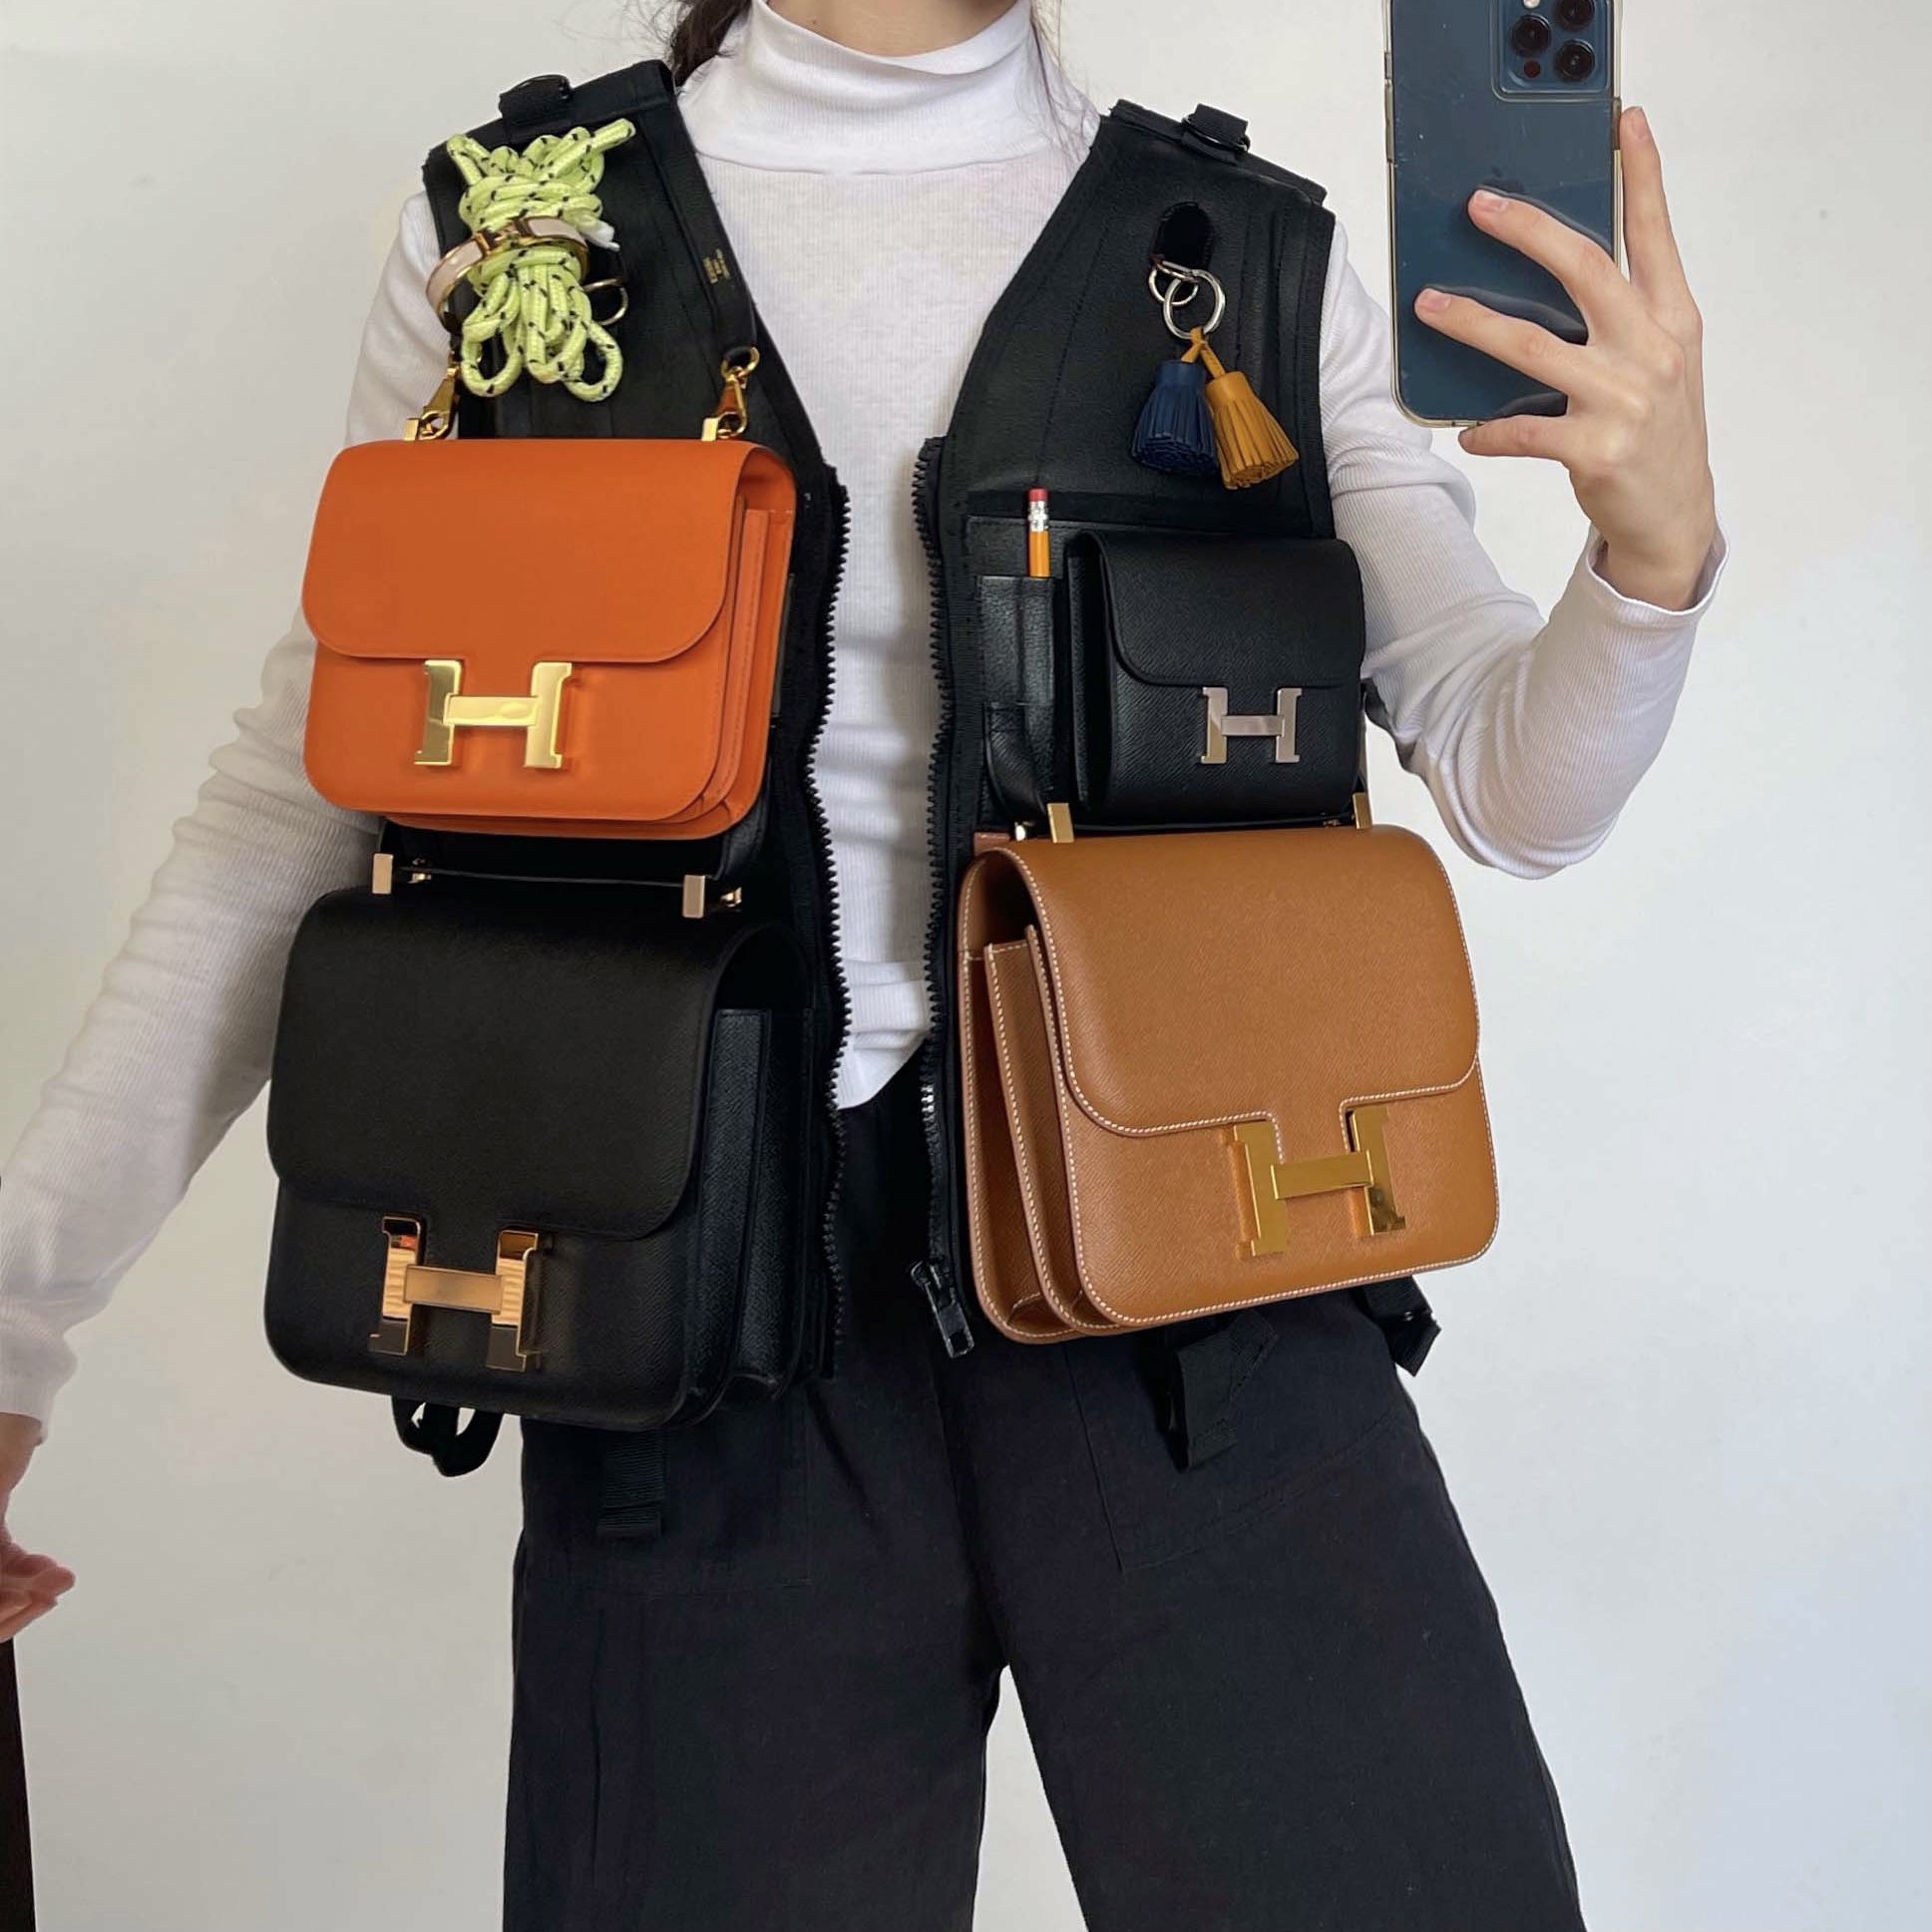 Is this Gabrielle backpack worth wearing? : r/RepladiesDesigner